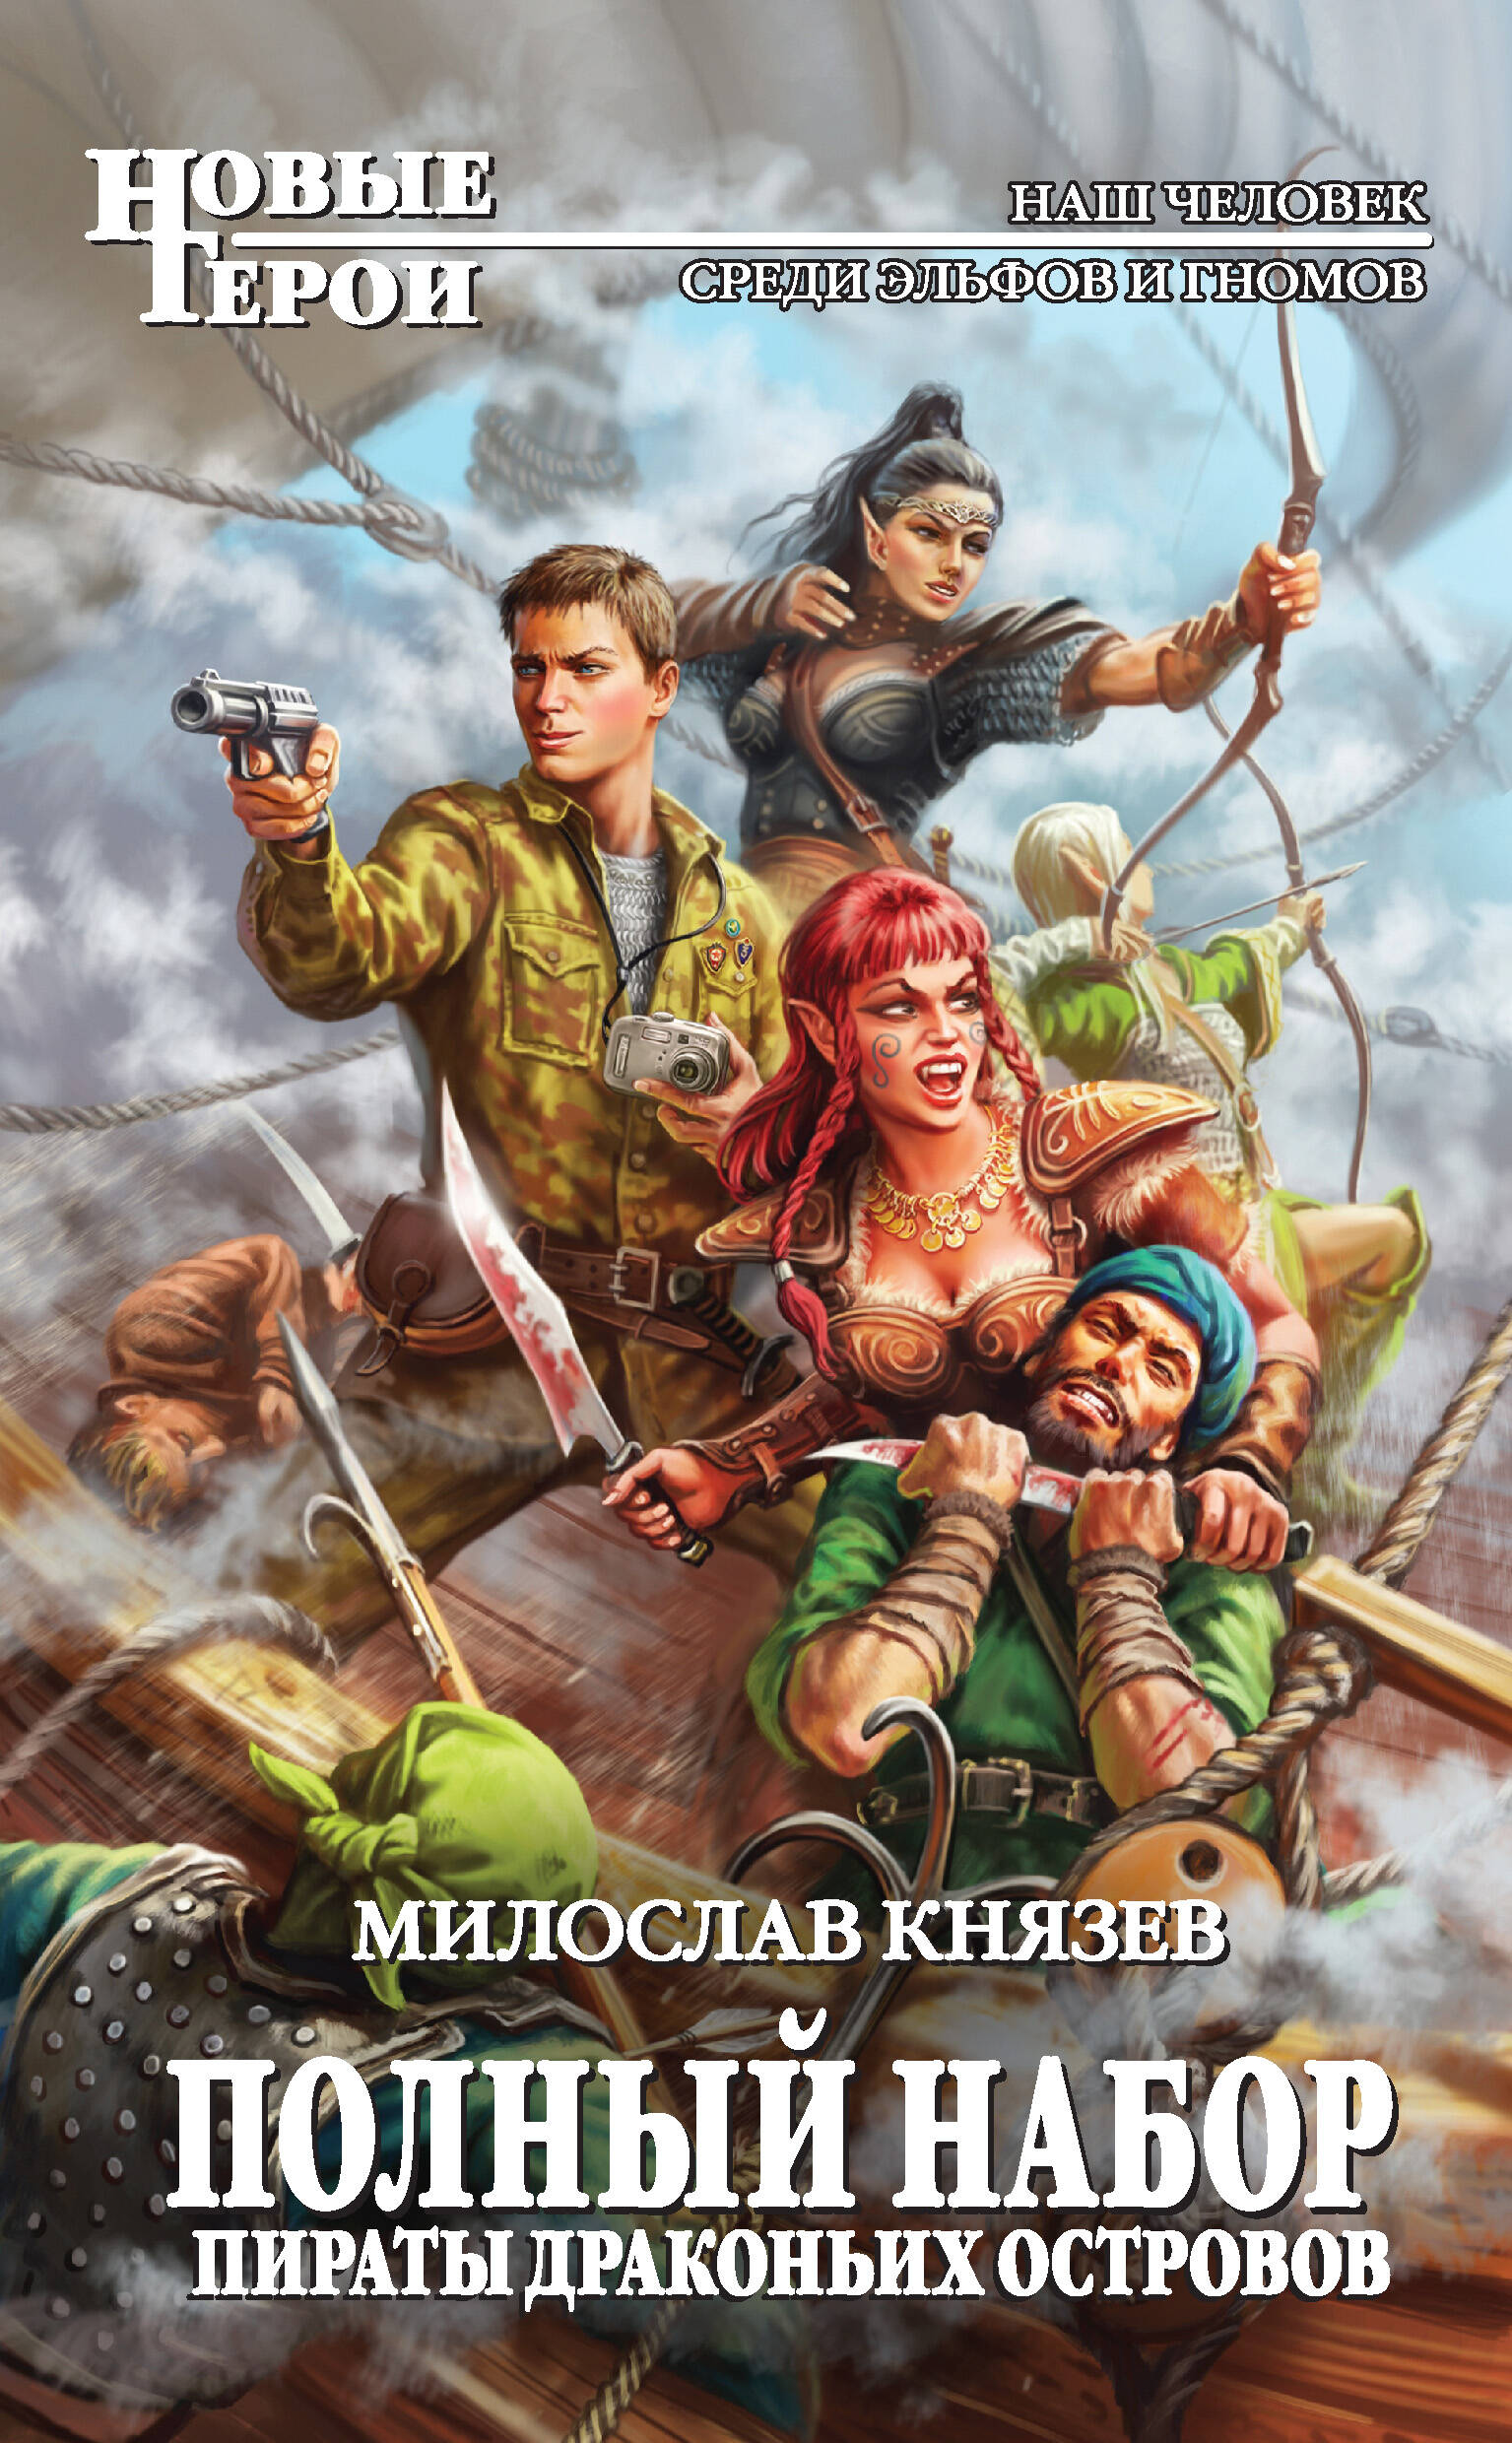 Читать российские фэнтези попаданцы. Полный набор пираты драконьих островов.